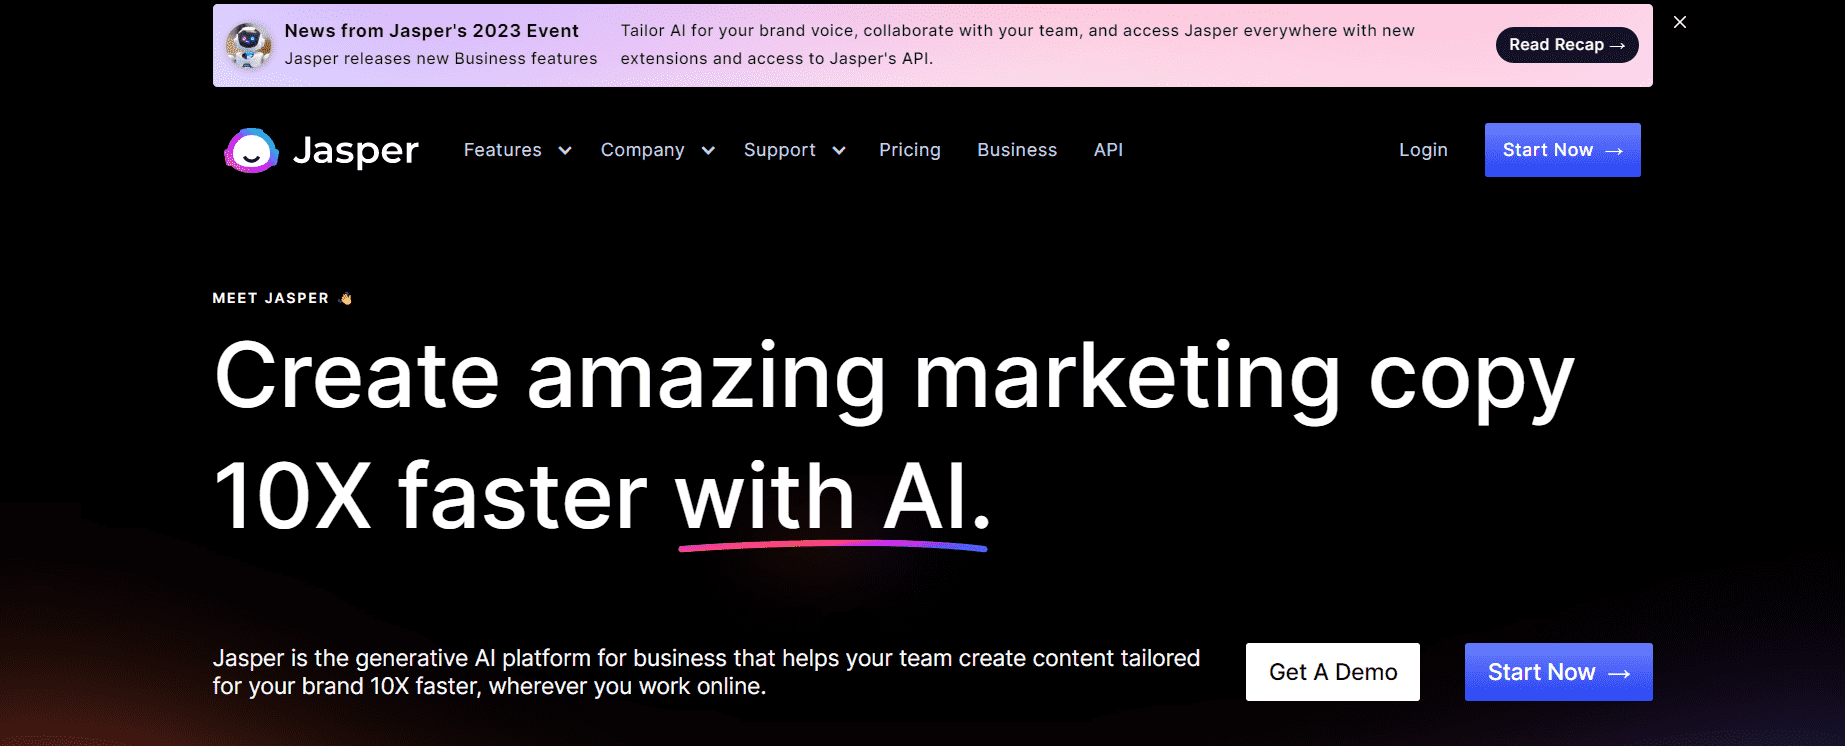 Jasper AI home page